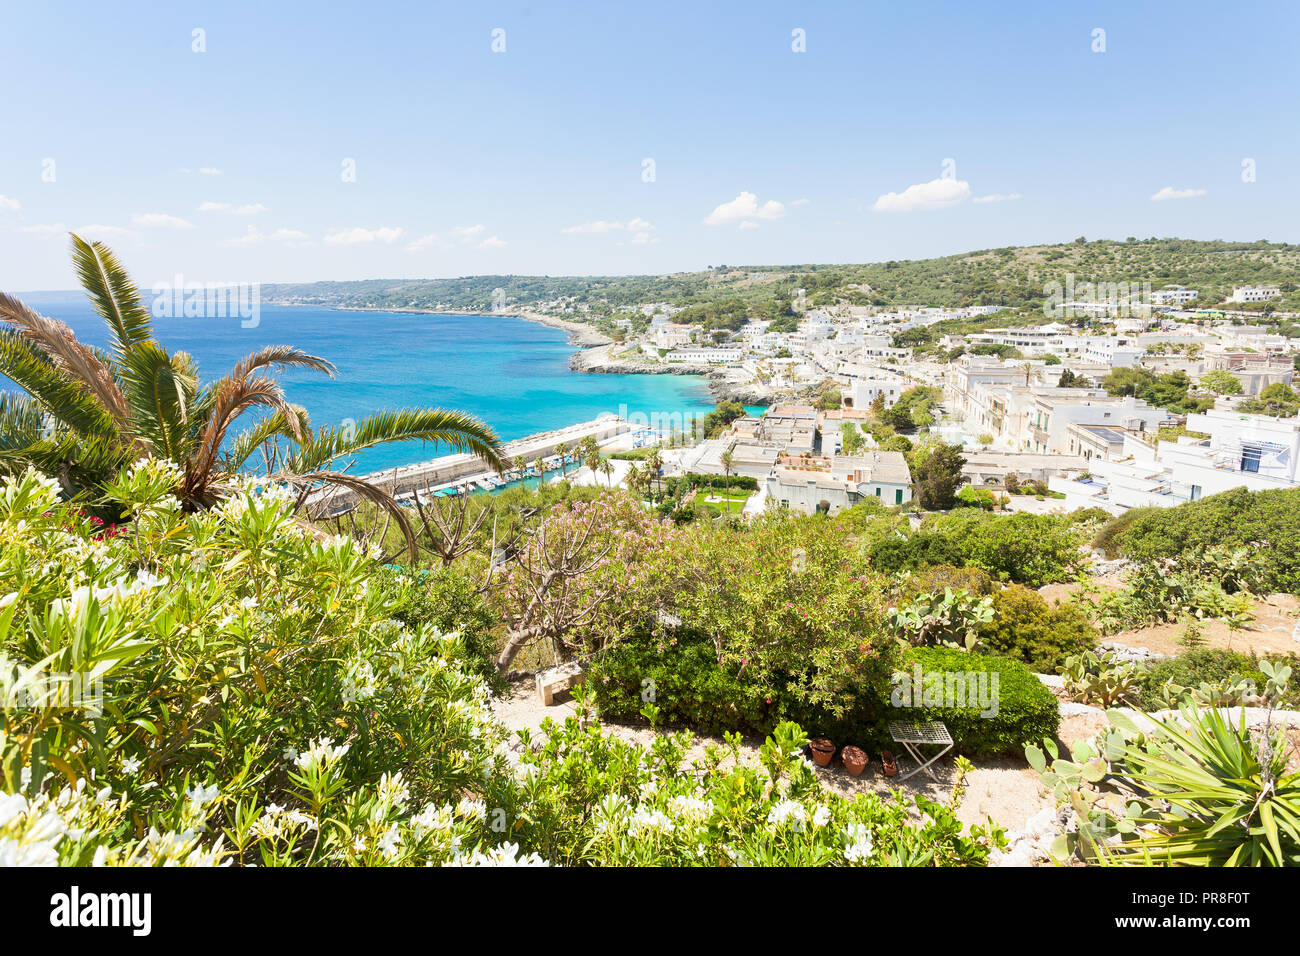 Castro Marina, Apulien, Italien - einen schönen Blick über die Stadt Castro Marina Stockfoto